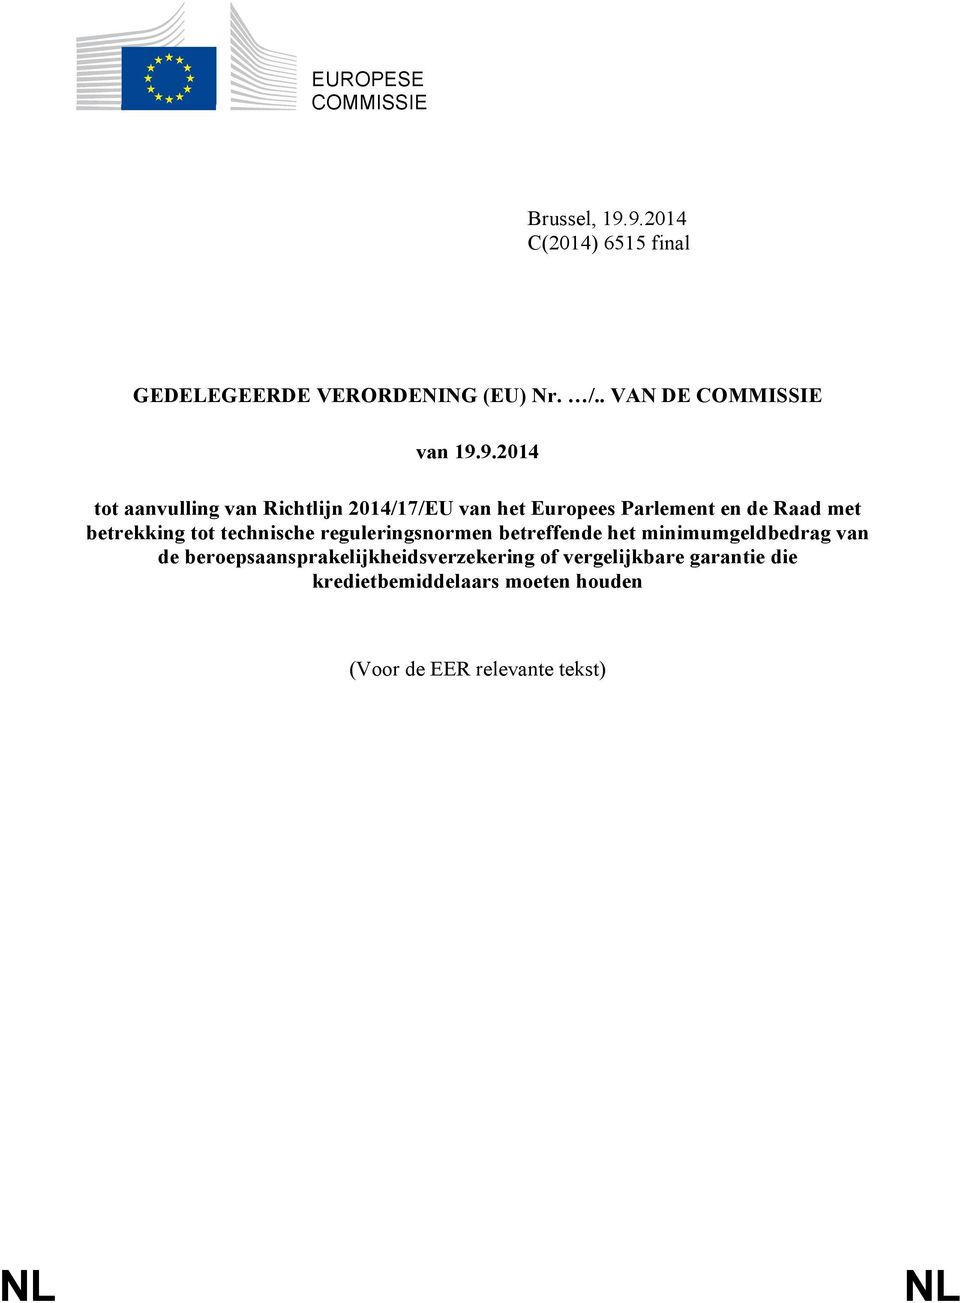 9.2014 tot aanvulling van Richtlijn 2014/17/EU van het Europees Parlement en de Raad met betrekking tot